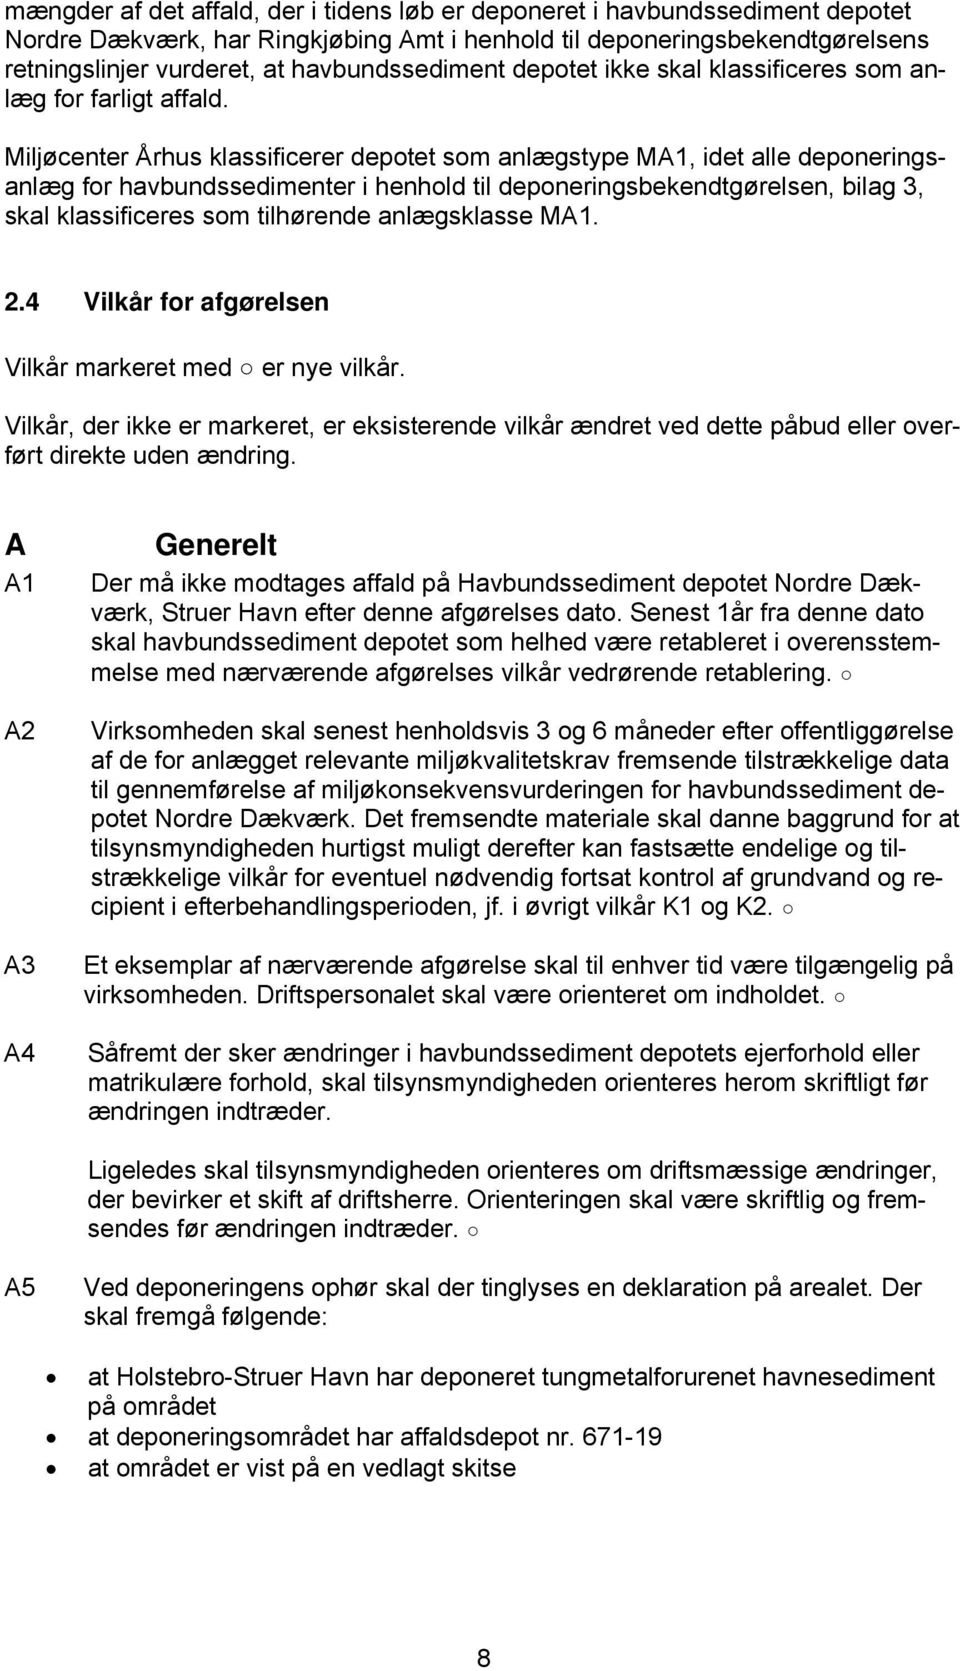 Miljøcenter Århus klassificerer depotet som anlægstype MA1, idet alle deponeringsanlæg for havbundssedimenter i henhold til deponeringsbekendtgørelsen, bilag 3, skal klassificeres som tilhørende